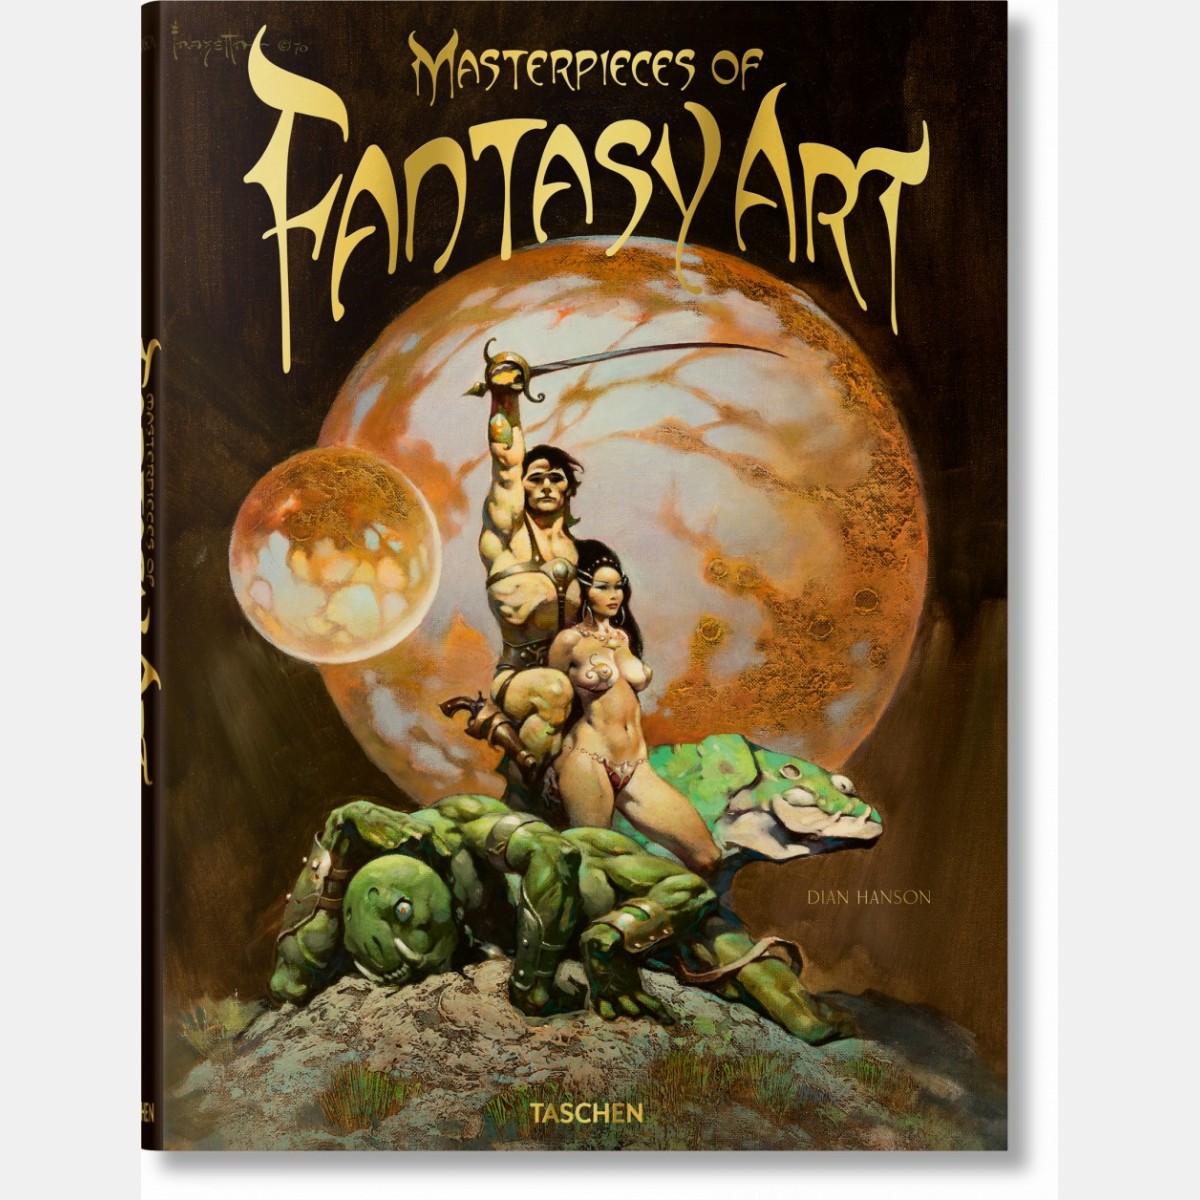 Masterpieces of Fantasy Art (Compendium)